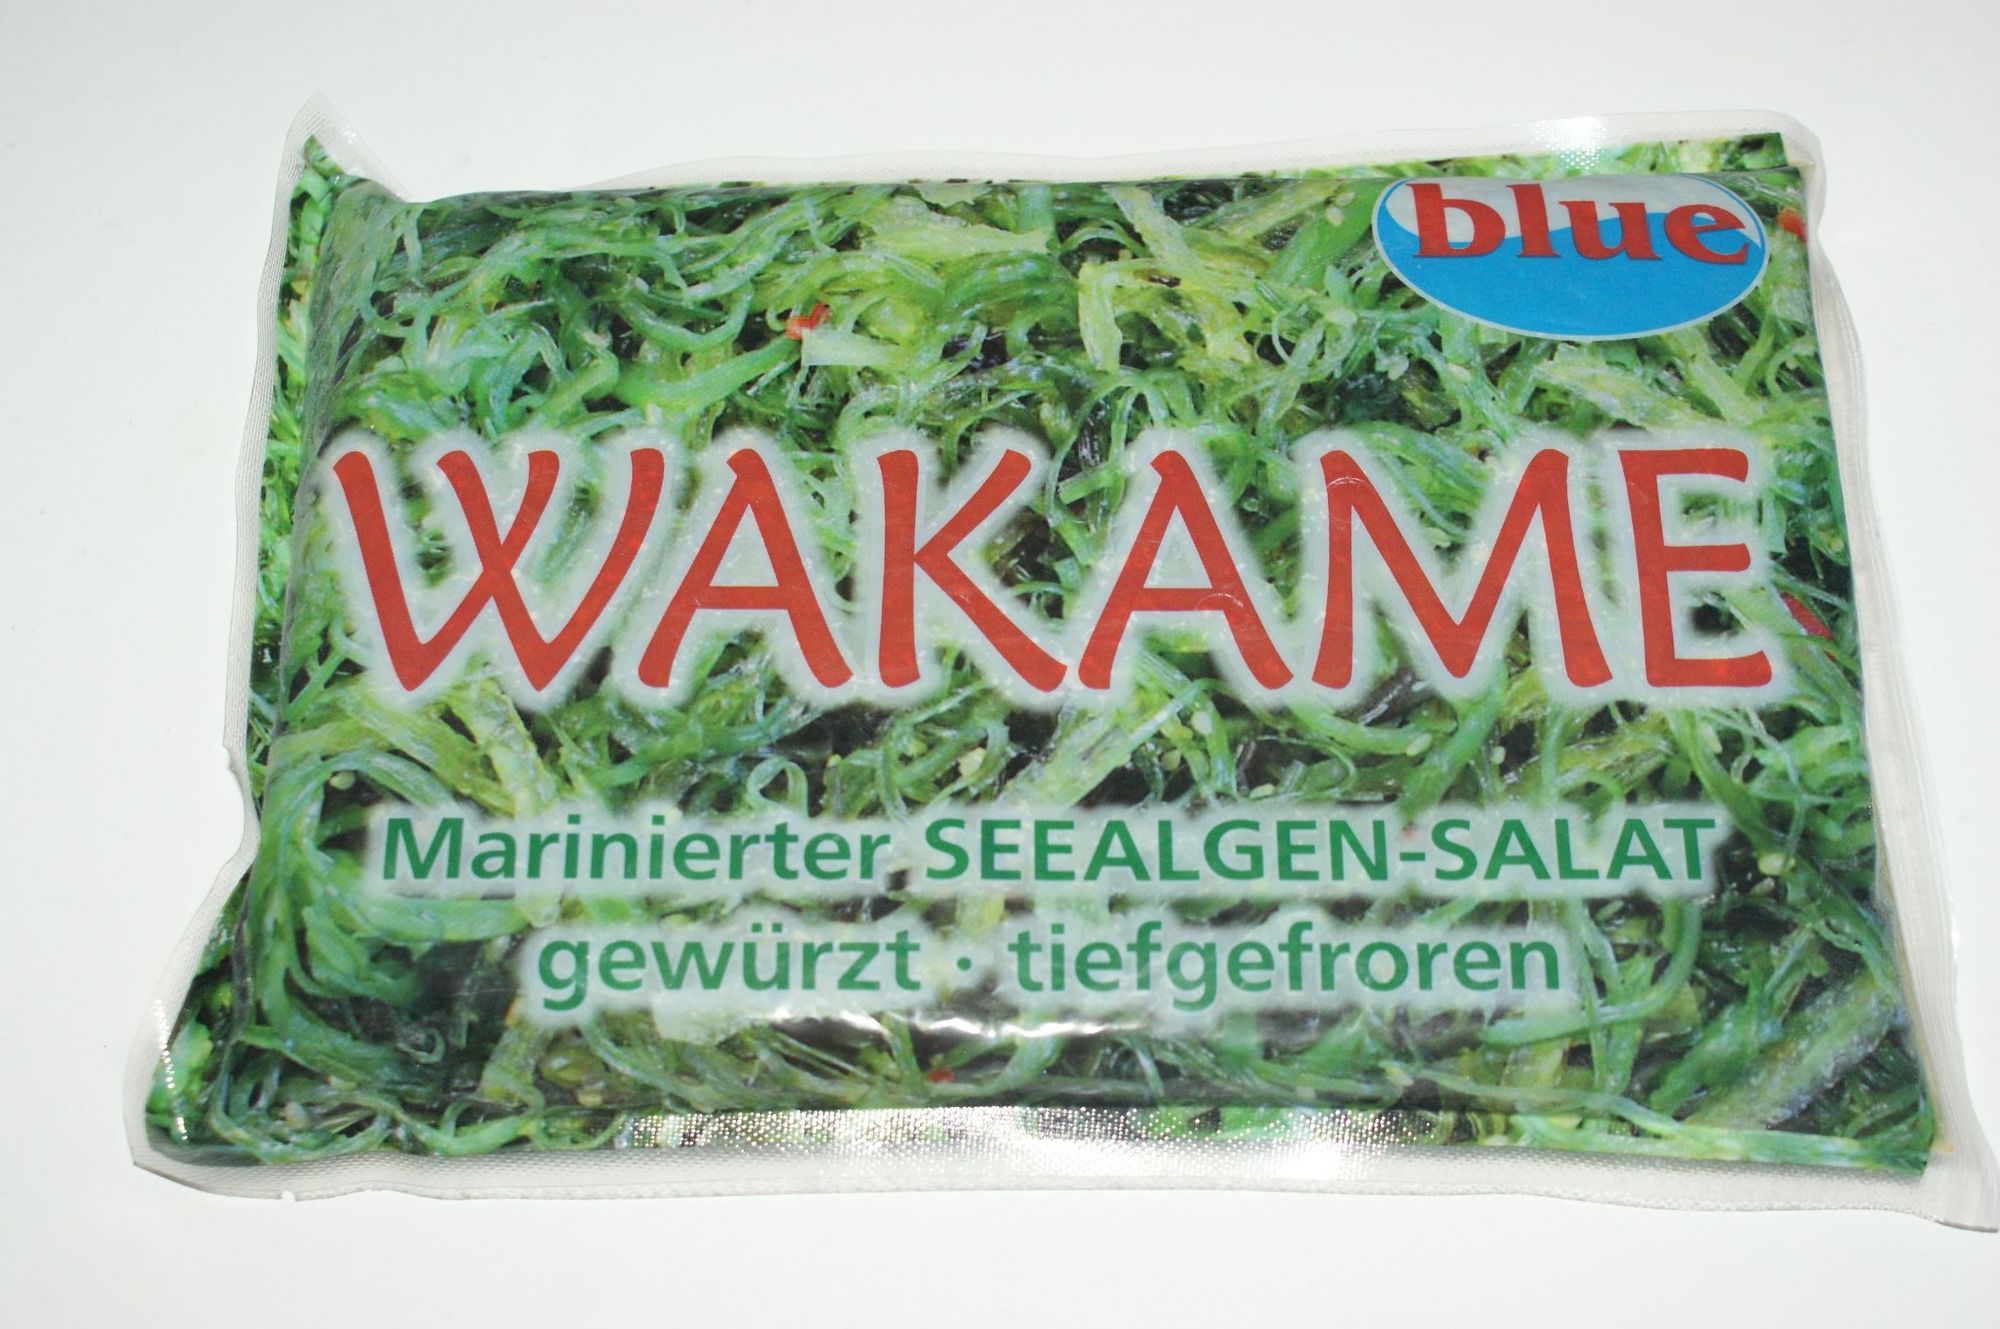 Wakame-Seealgensalat 1000g